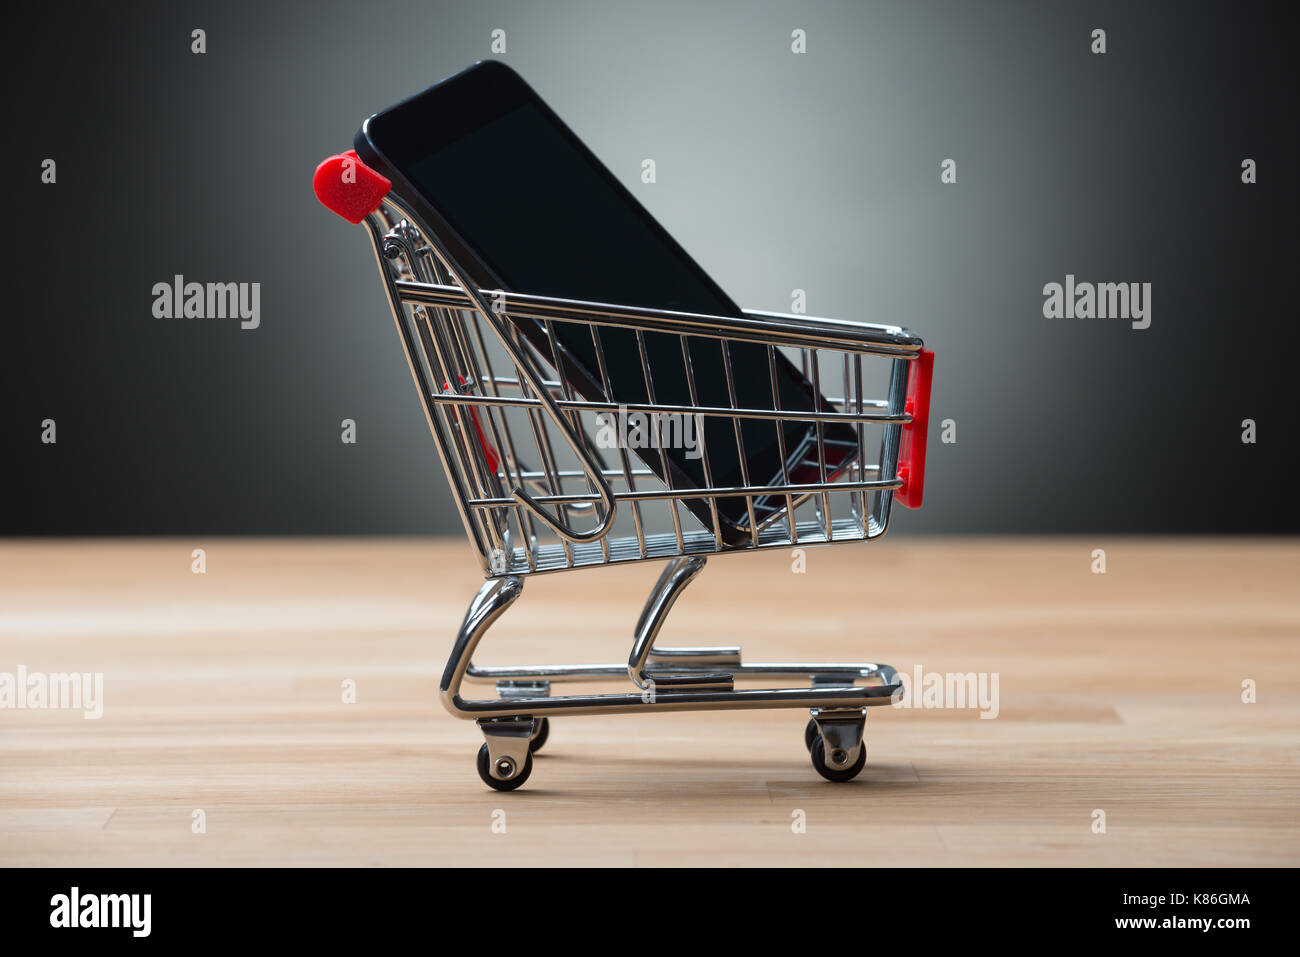 Nahaufnahme des Smartphones im Warenkorb auf hölzernen Tisch gegen grauer Hintergrund Stockfoto